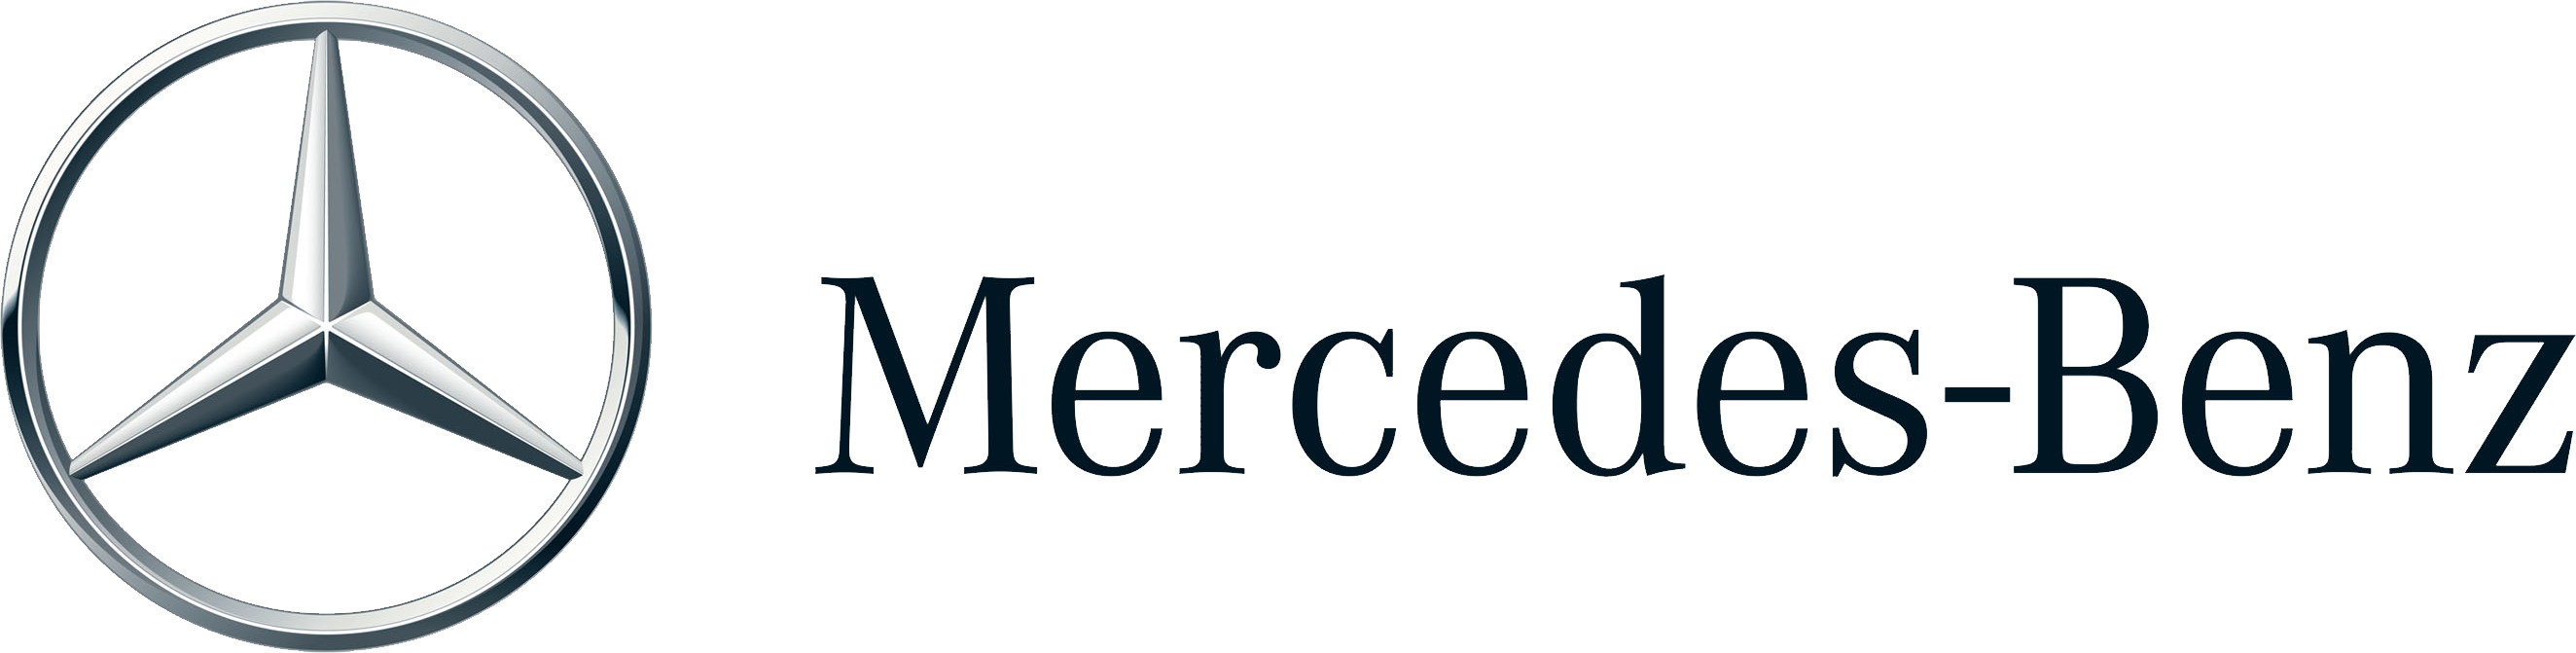 Mercedes-Benz logo | Dawsondirect